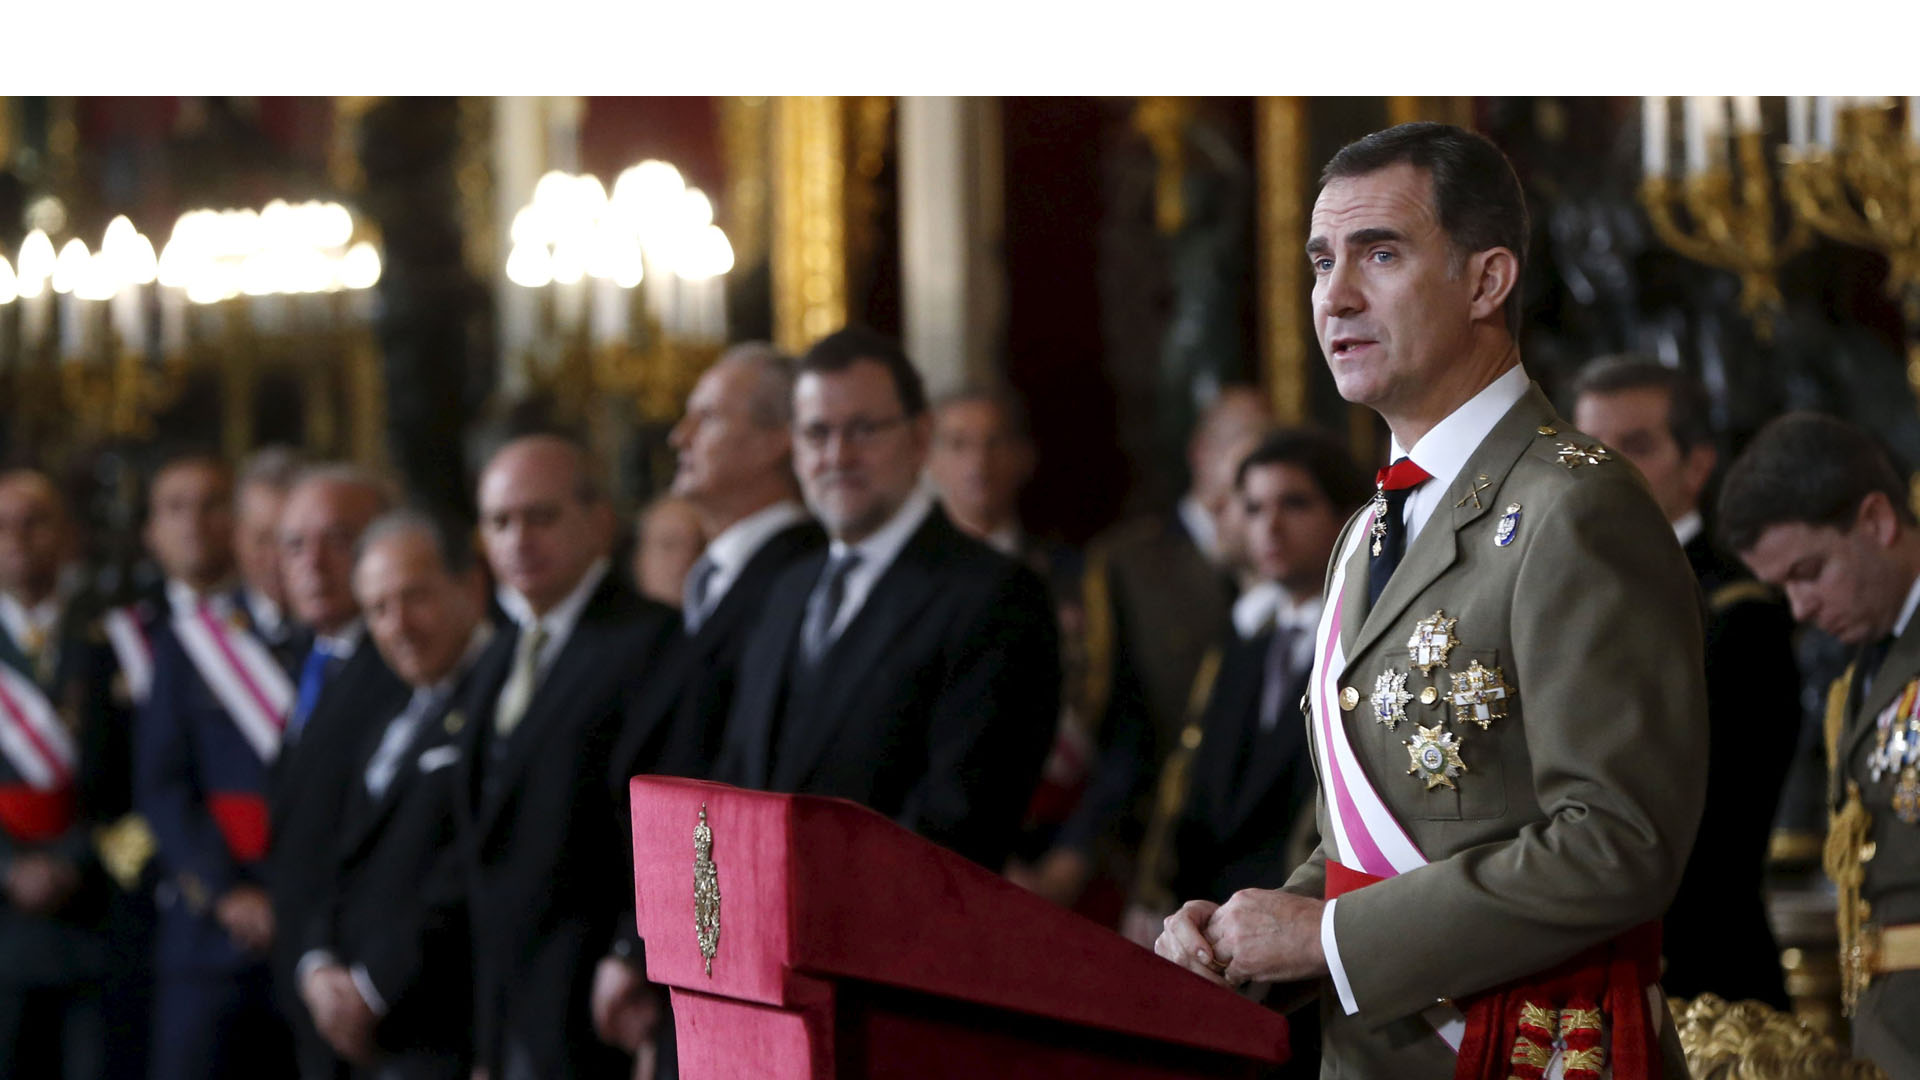 Al finalizar las reuniones, el rey Felipe VI comunicará su decisión al presidente de la Cámara baja